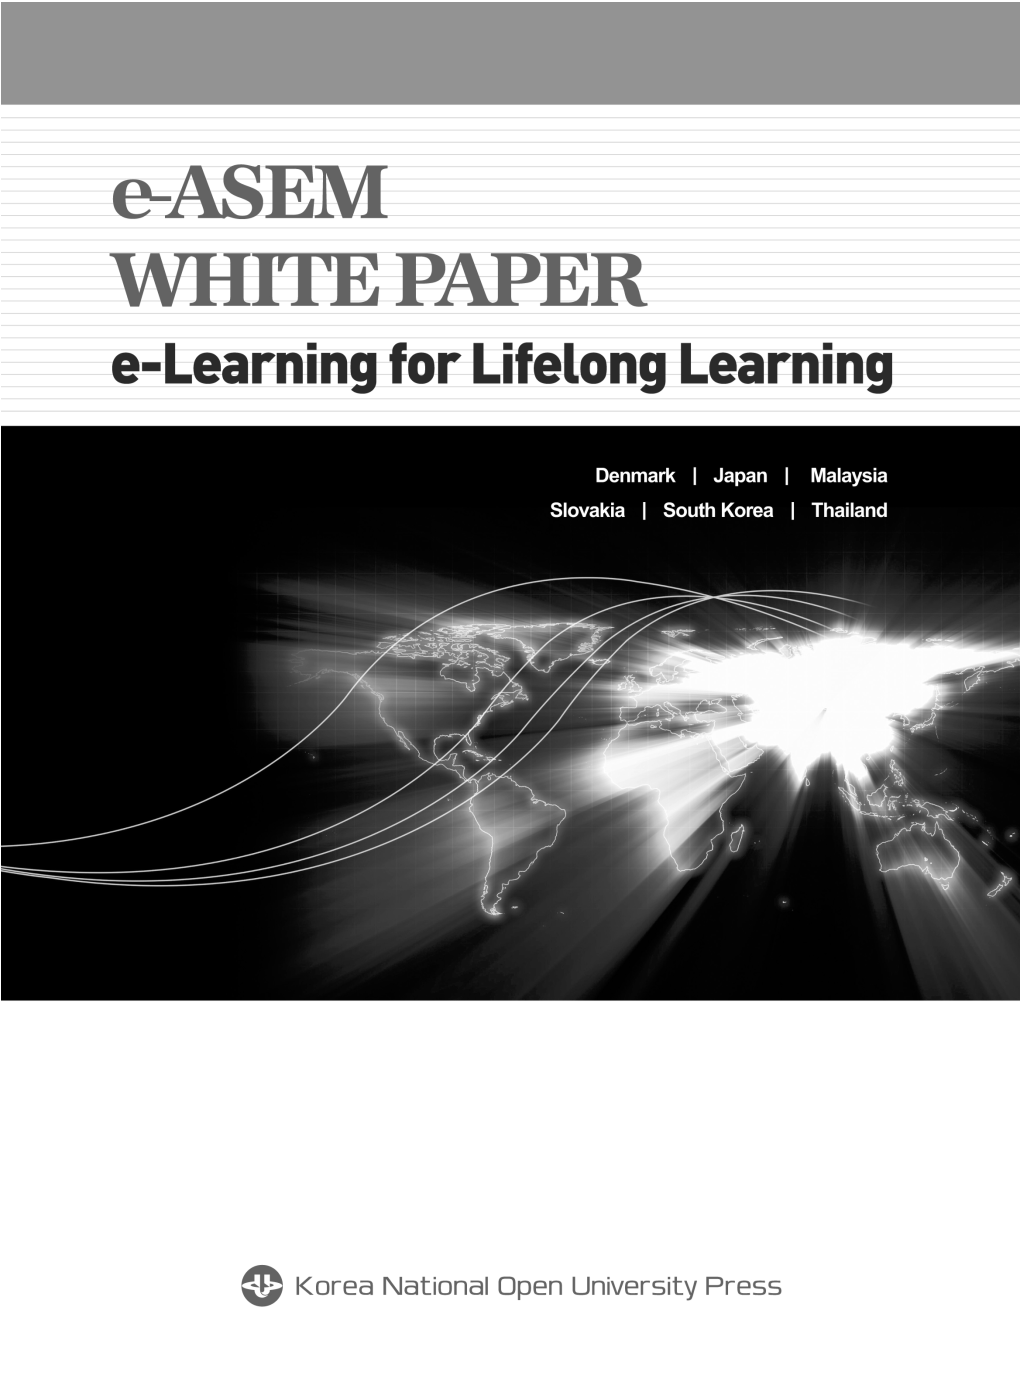 Easem White Paper: E-Learning for Lifelong Learning